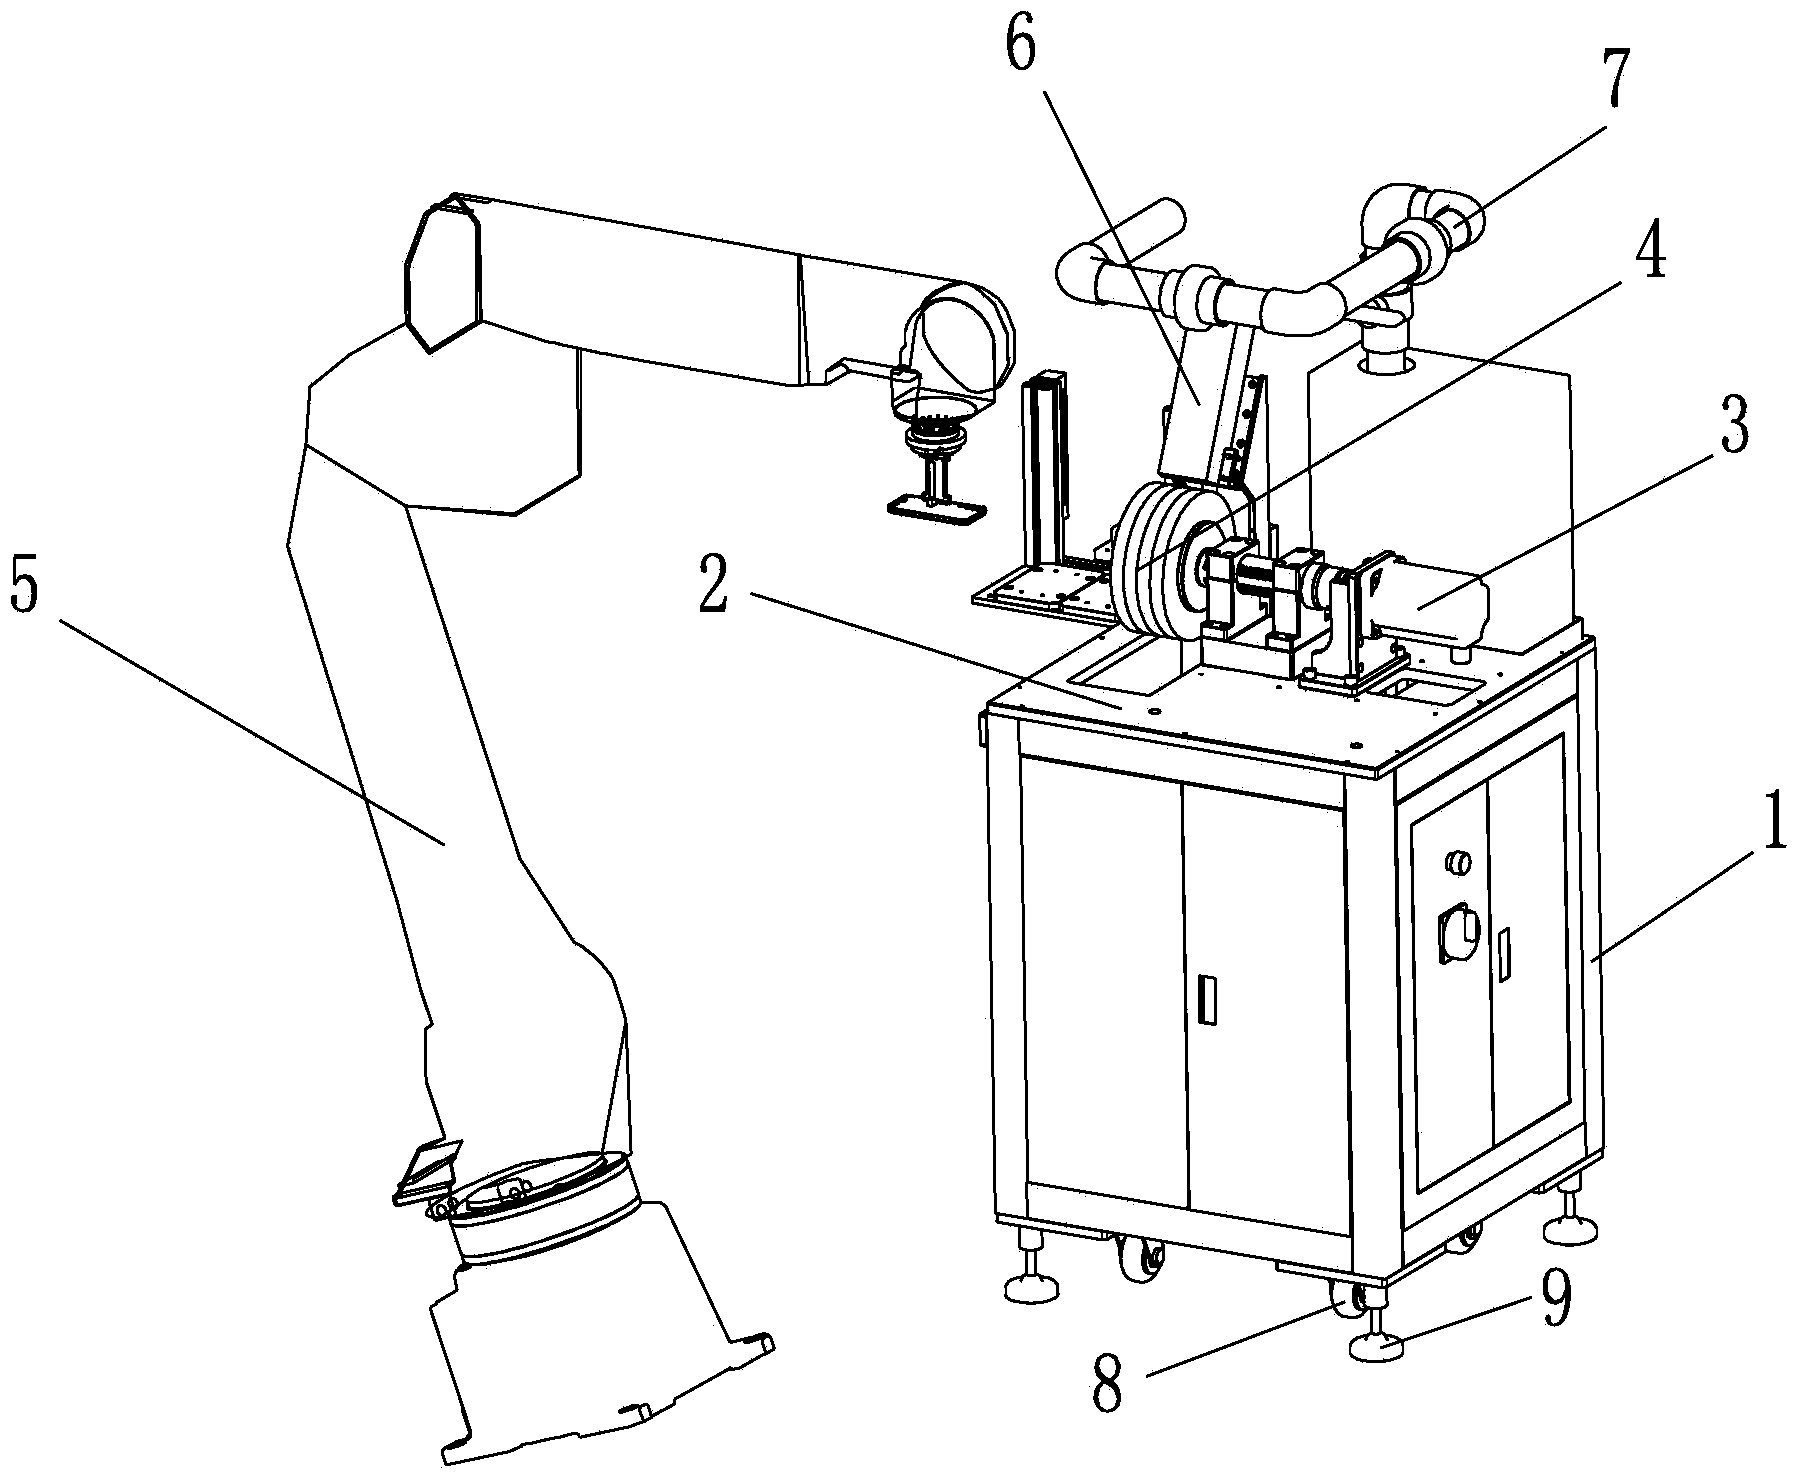 Robot polisher